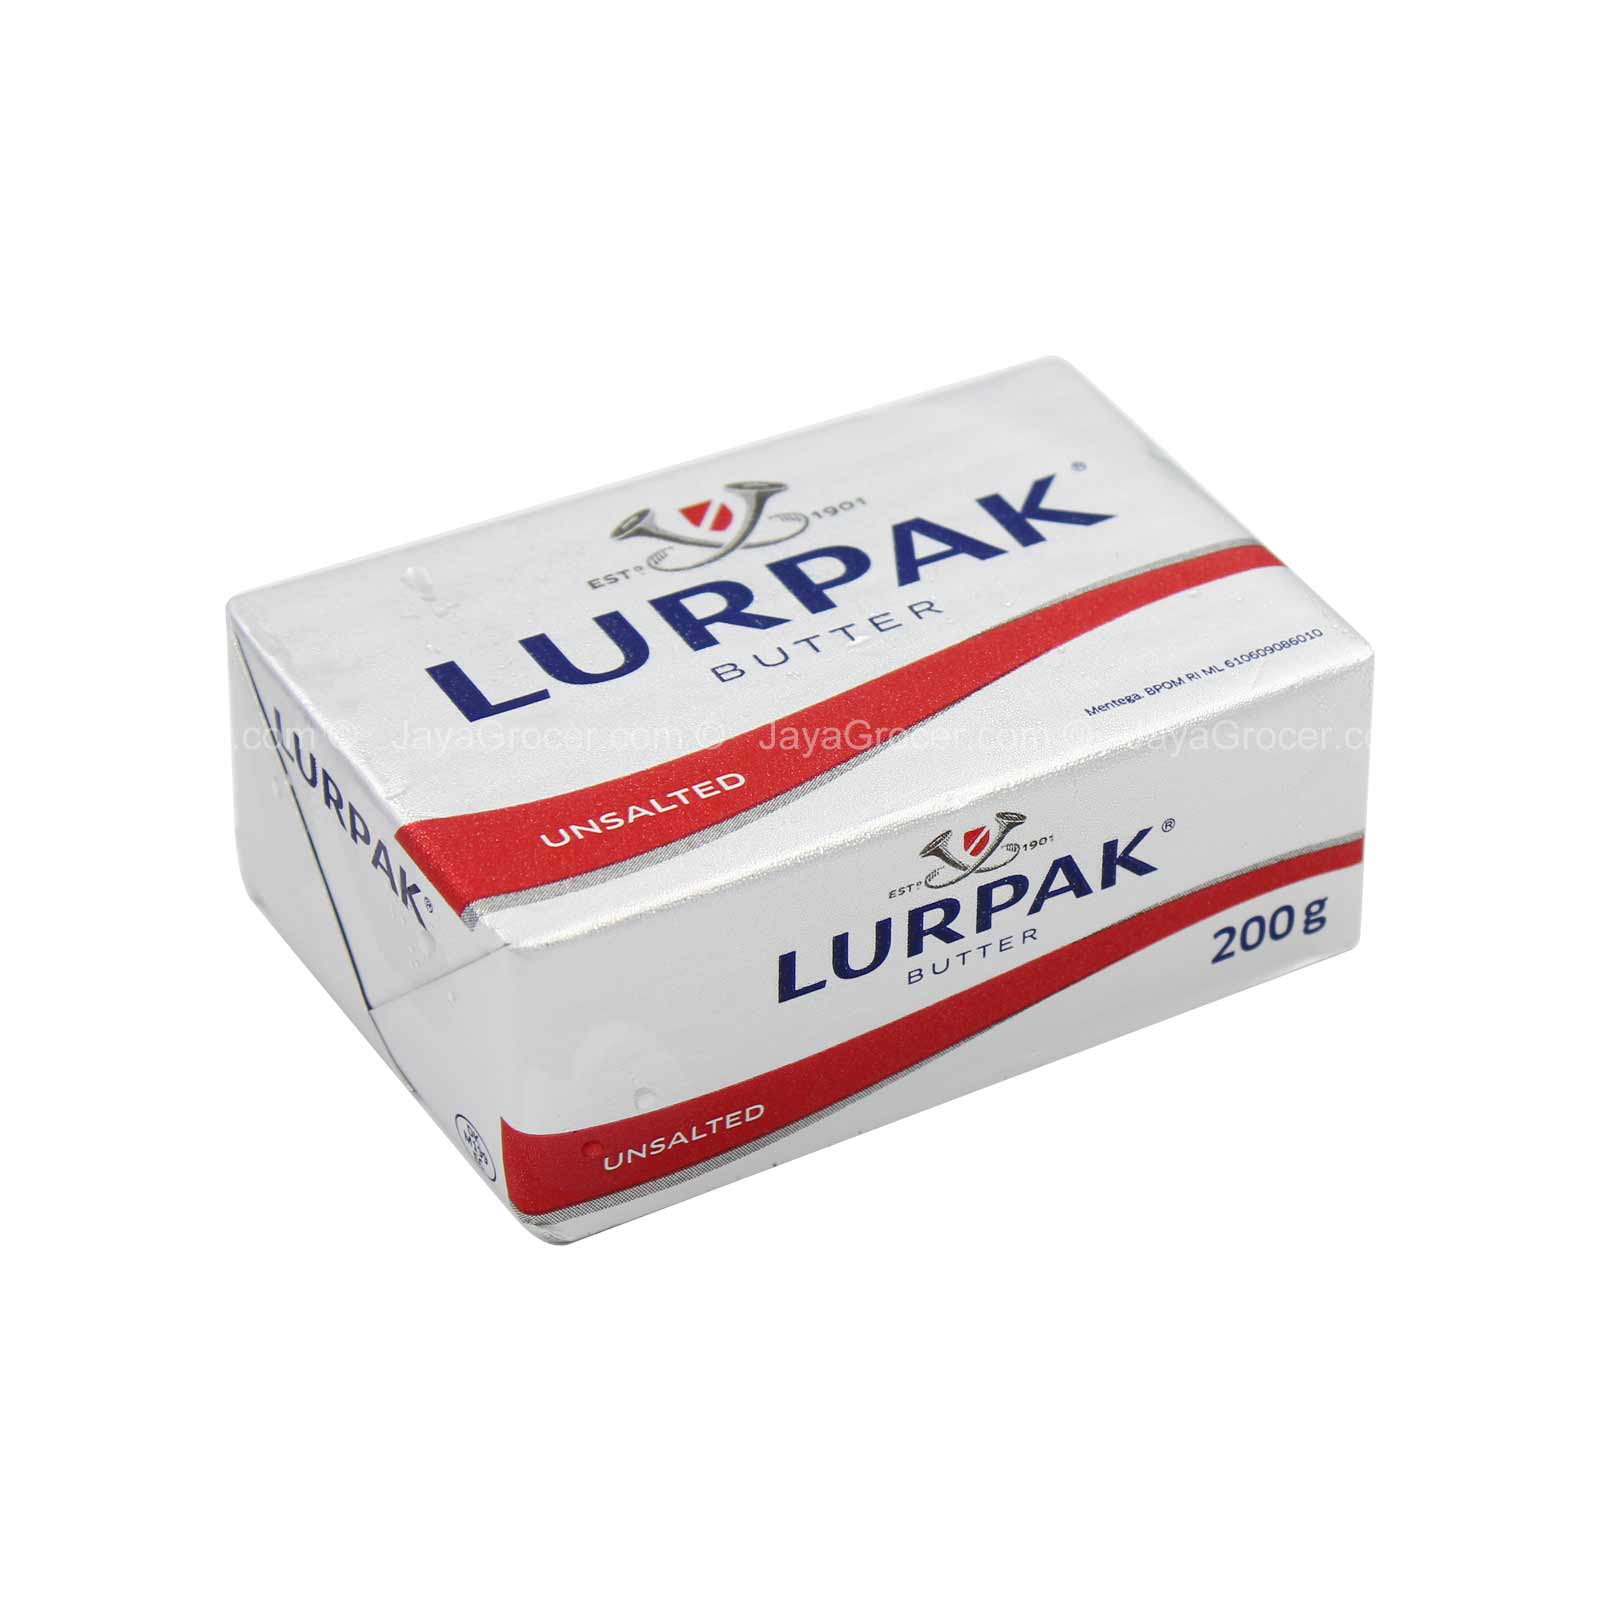 Lurpak-Unsalted-Butter